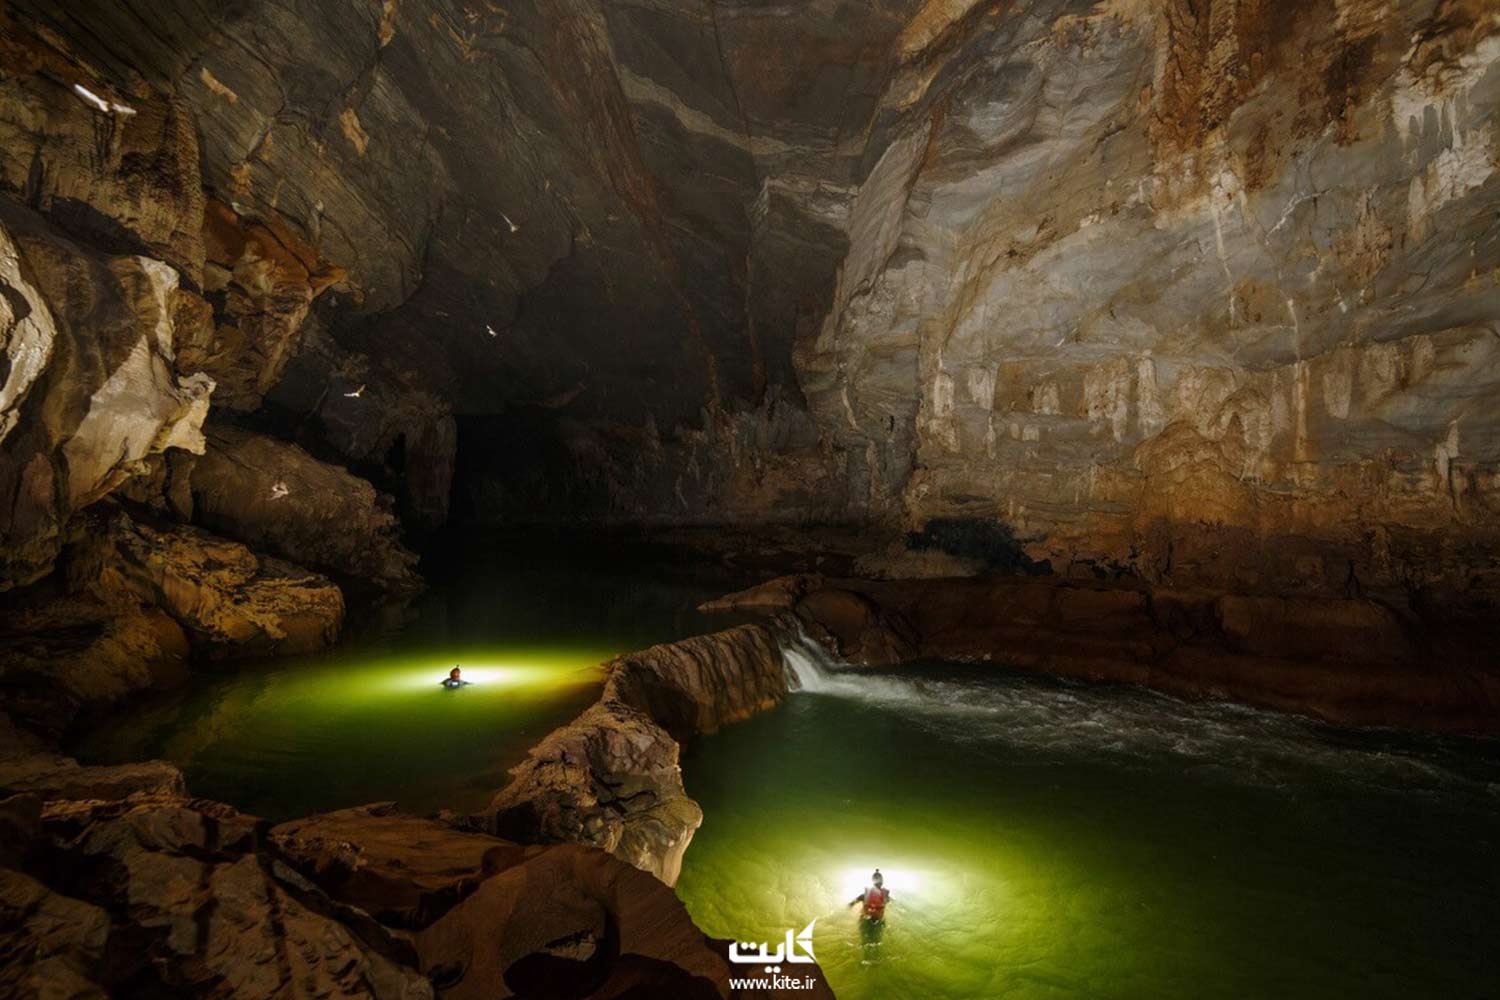 دو مرد در حال شنا داخل حوضچه های یک غار